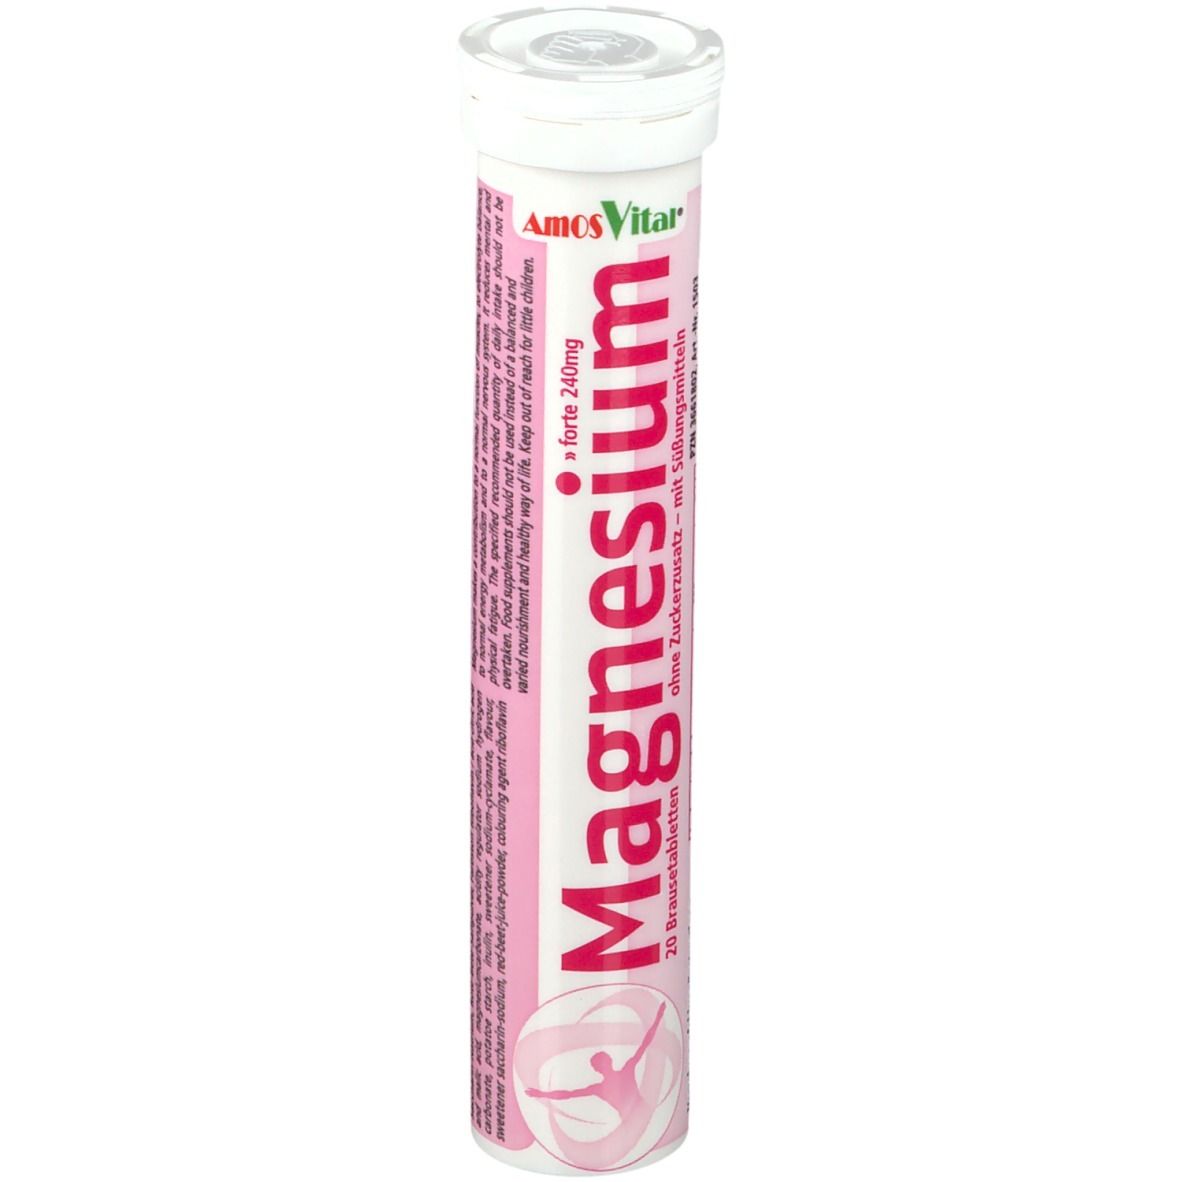 AmosVital® Soma Magnesium Brausetabletten